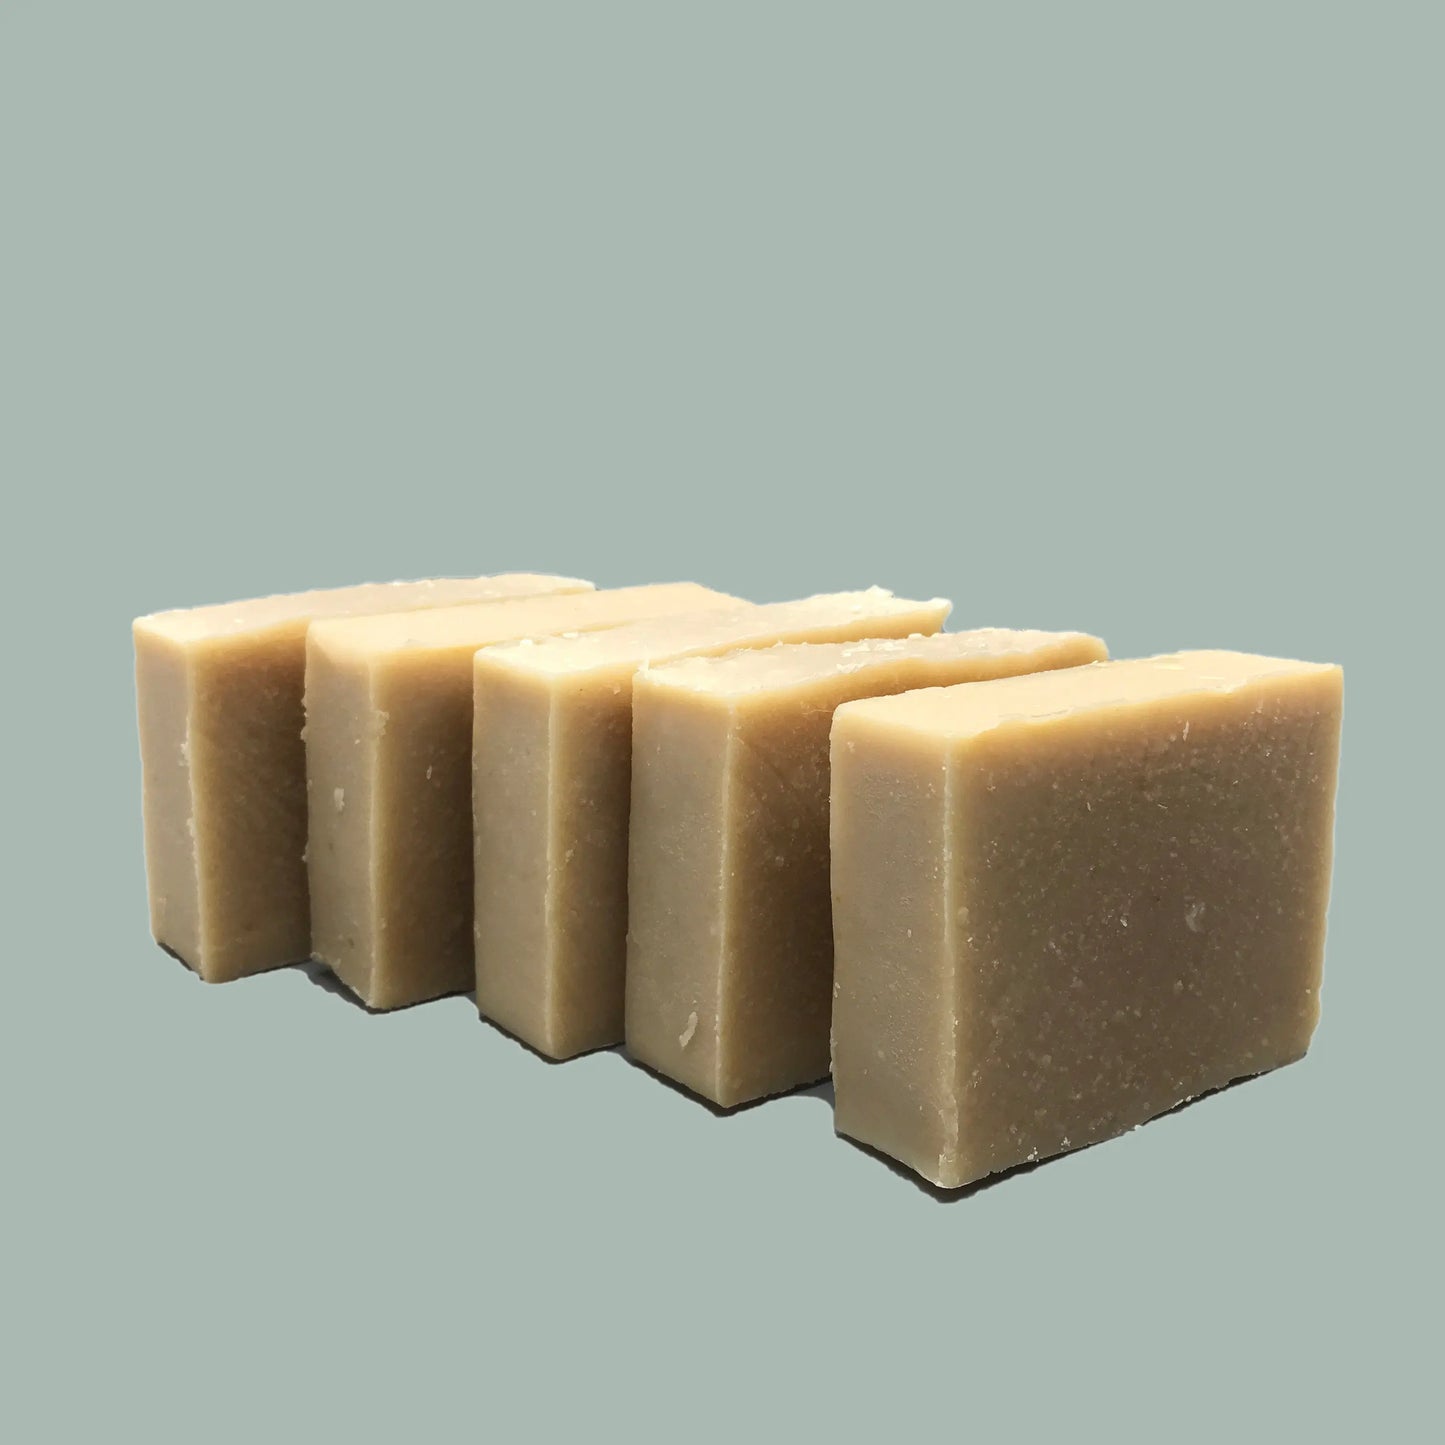 Bargain Bundles of Soap - Save 10% Harvest Hills Skin Care - All Natural Goat Milk Skin Care, LLC